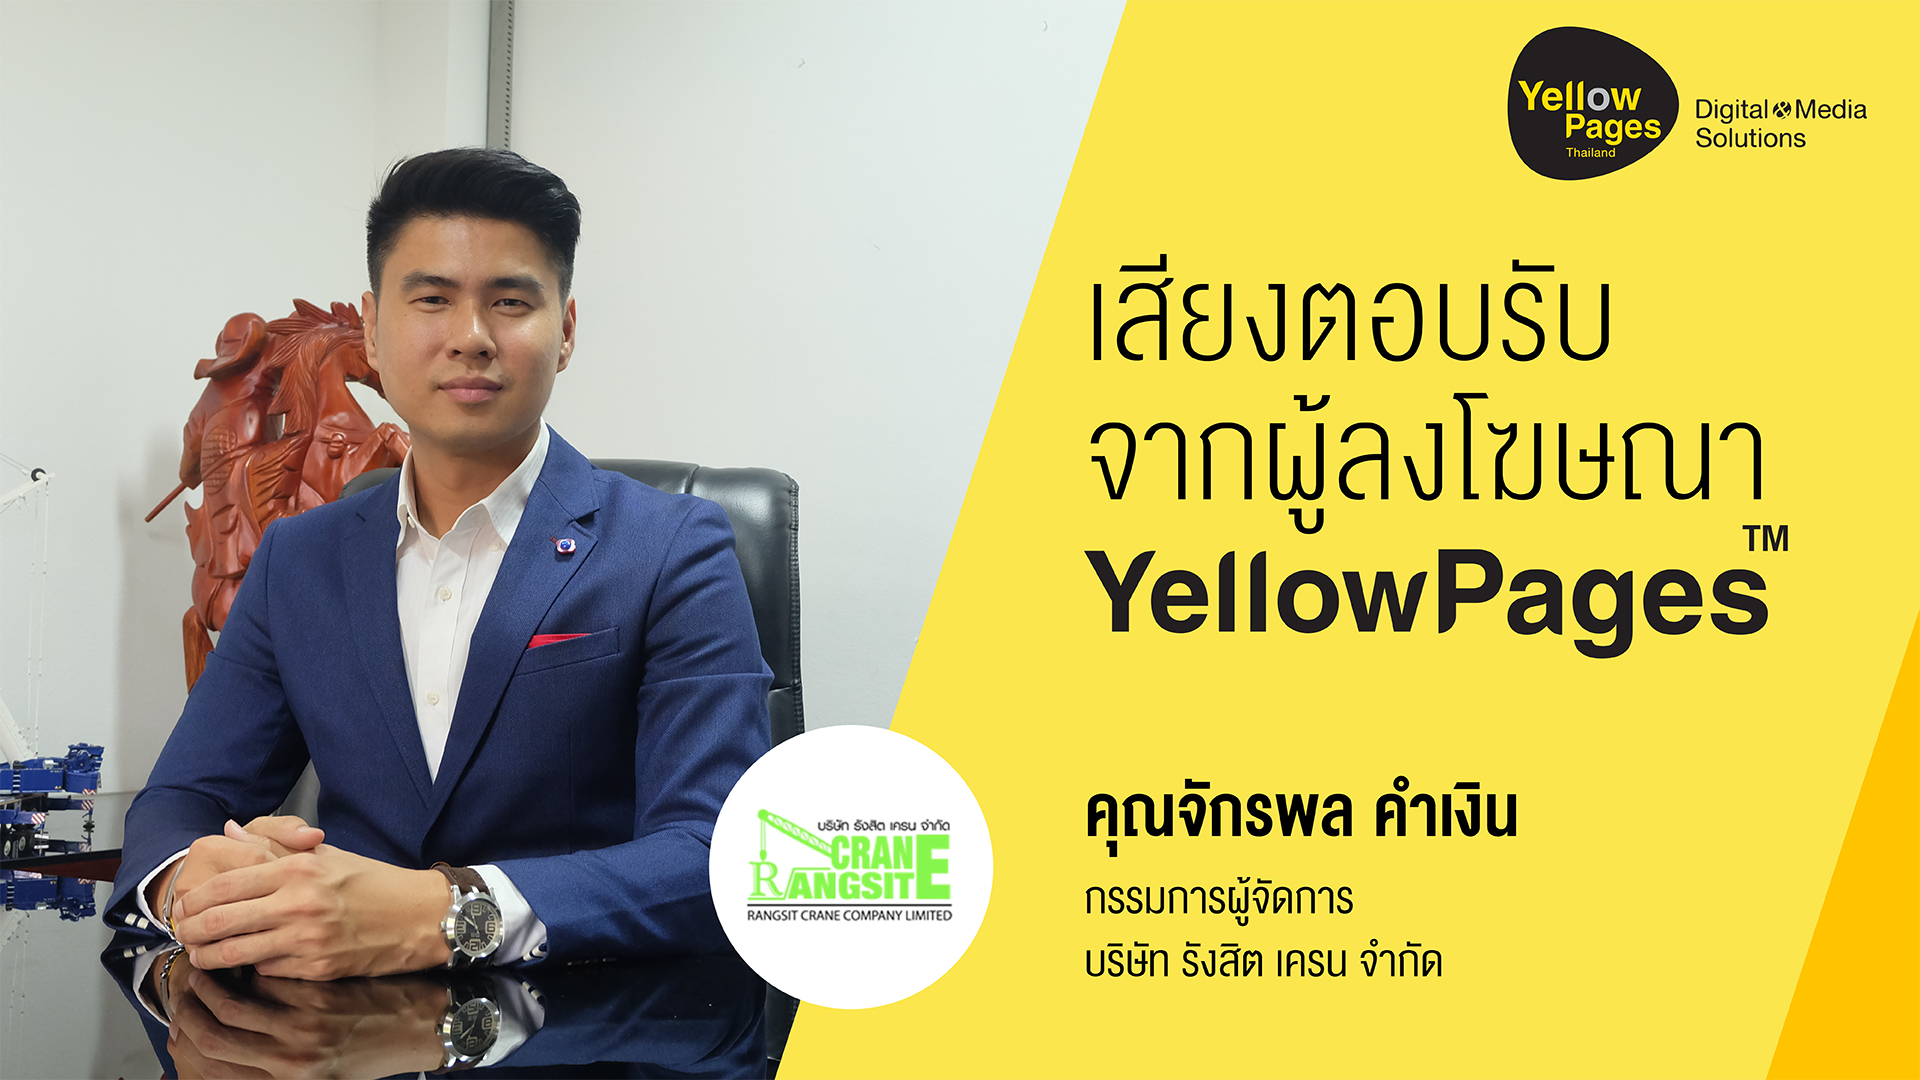 คุณณพสธรญ์ คงเตชกิจ บริษัท มงคลถาวรกิจ จำกัด - ลงโฆษณา Thailand YellowPages